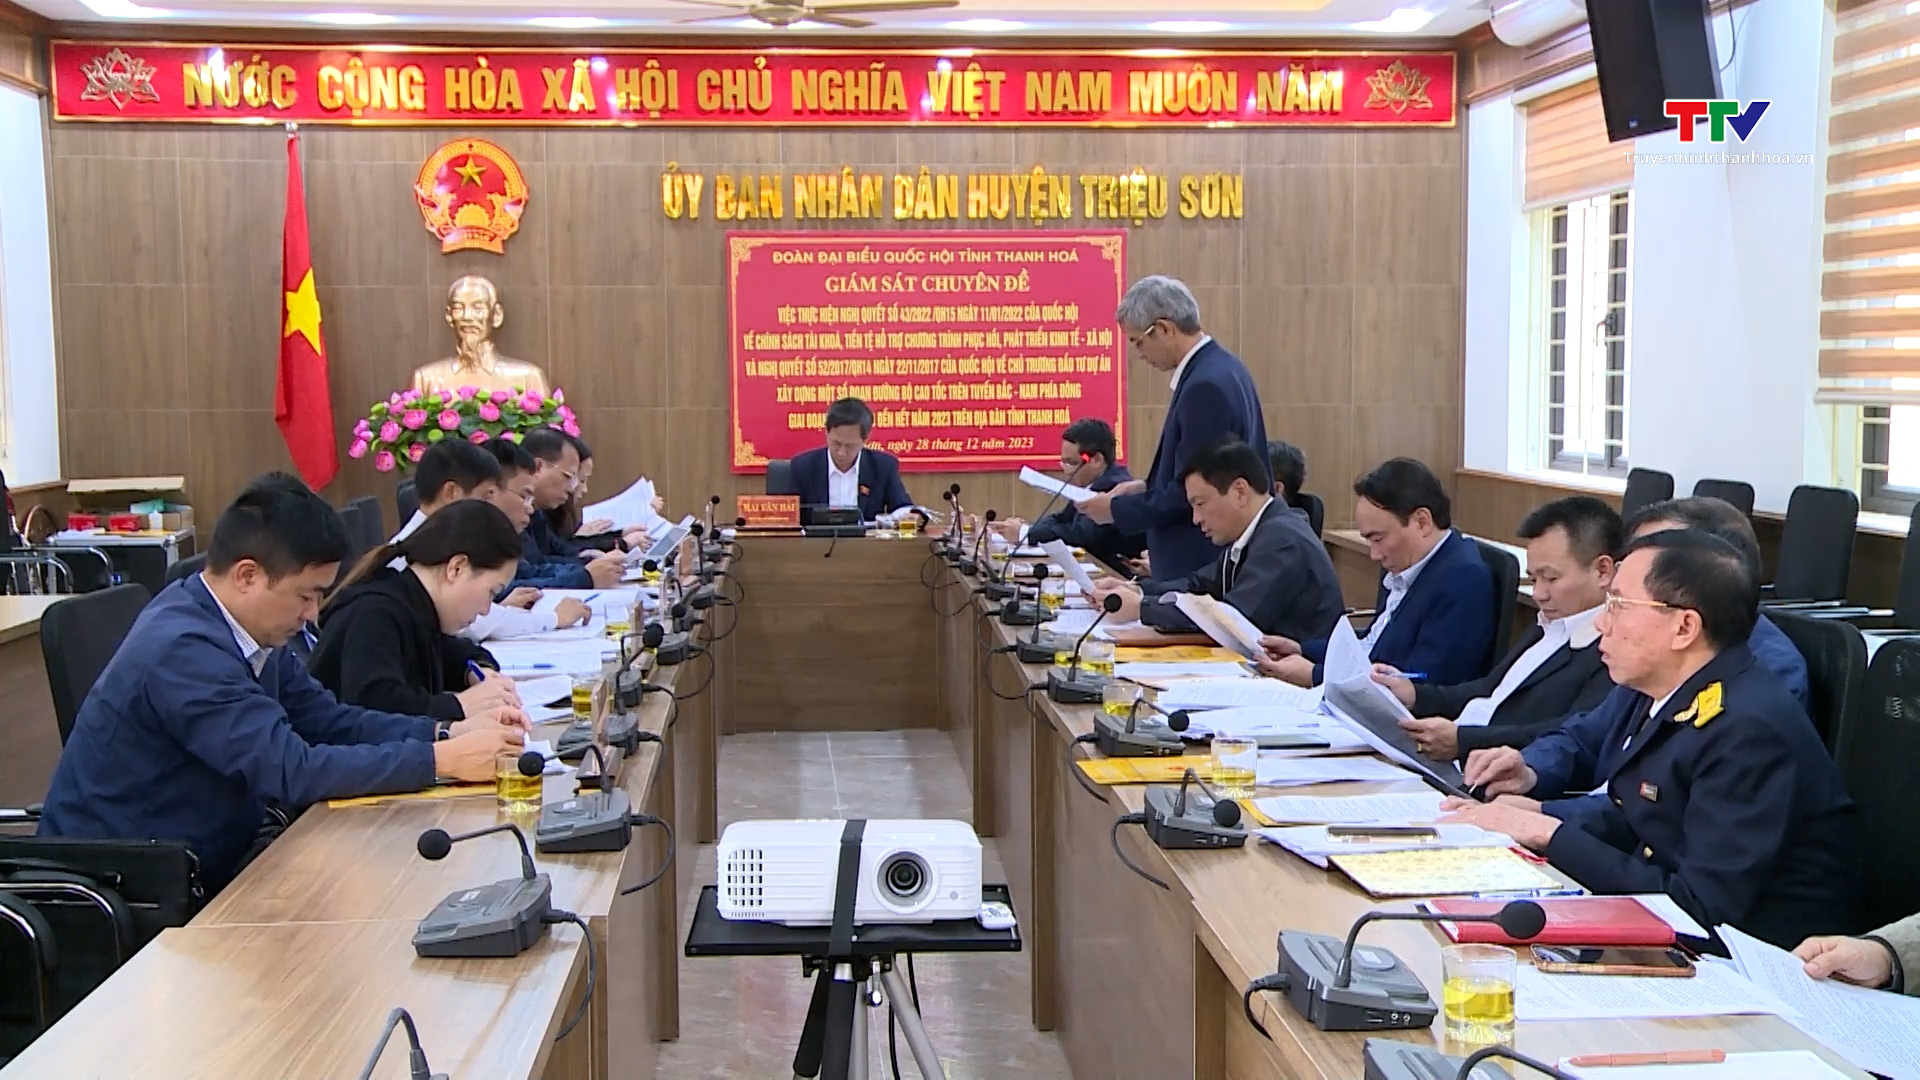 Đoàn đại biểu Quốc hội tỉnh giám sát chuyên đề thực hiện Nghị quyết 43 và Nghị quyết 52 của Quốc hội tại hai huyện Yên Định và Triệu Sơn- Ảnh 2.